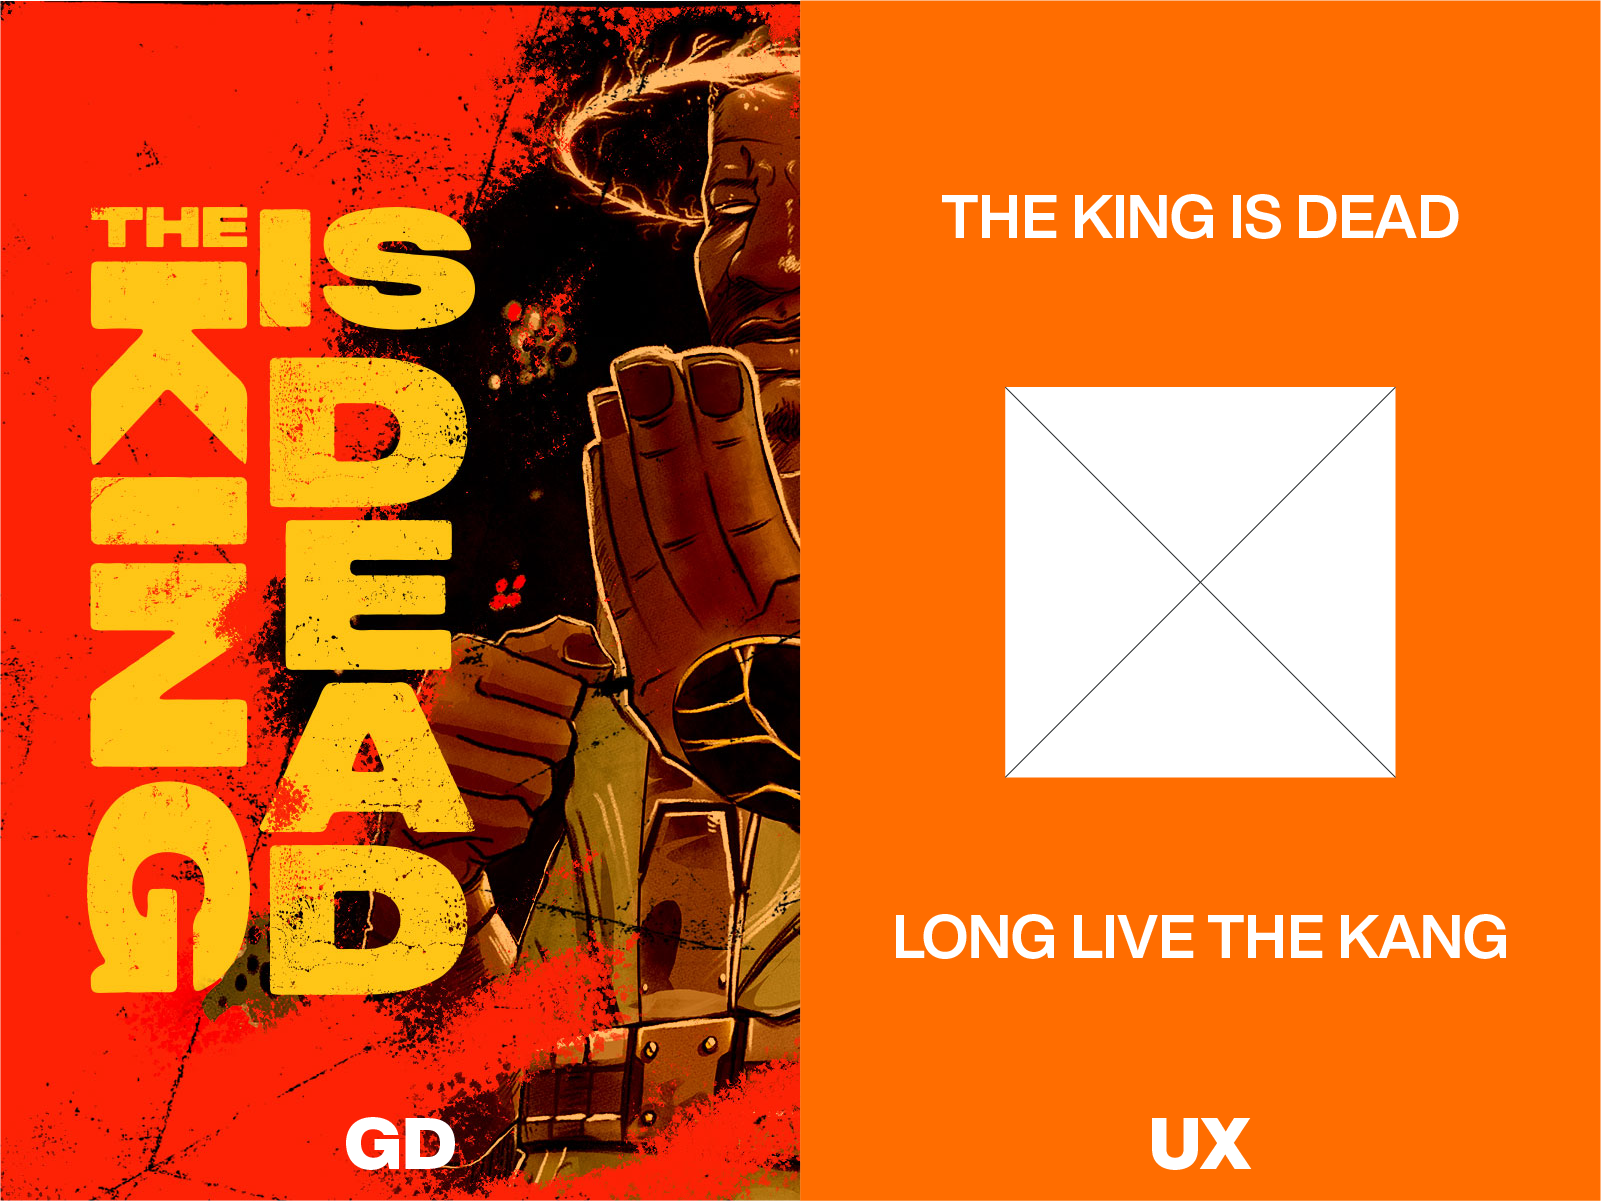 Graphic design vs UX Design – I end the debate right here.